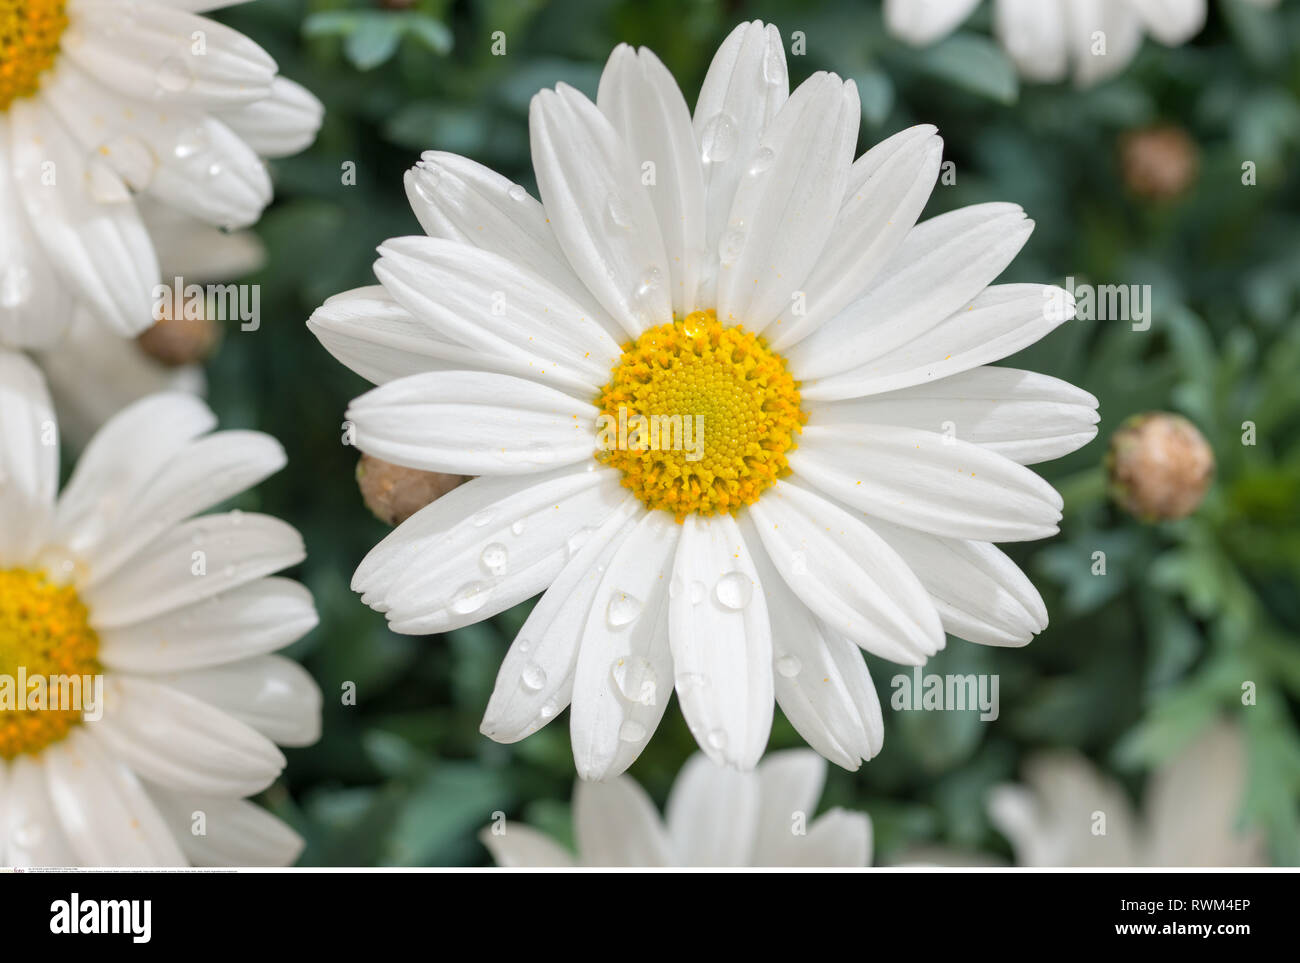 Botanik, oxeye daisy flower, Vorsicht! Für Greetingcard-Use/Postcard-Use in deutschsprachigen Ländern gibt es einige Einschränkungen Stockfoto